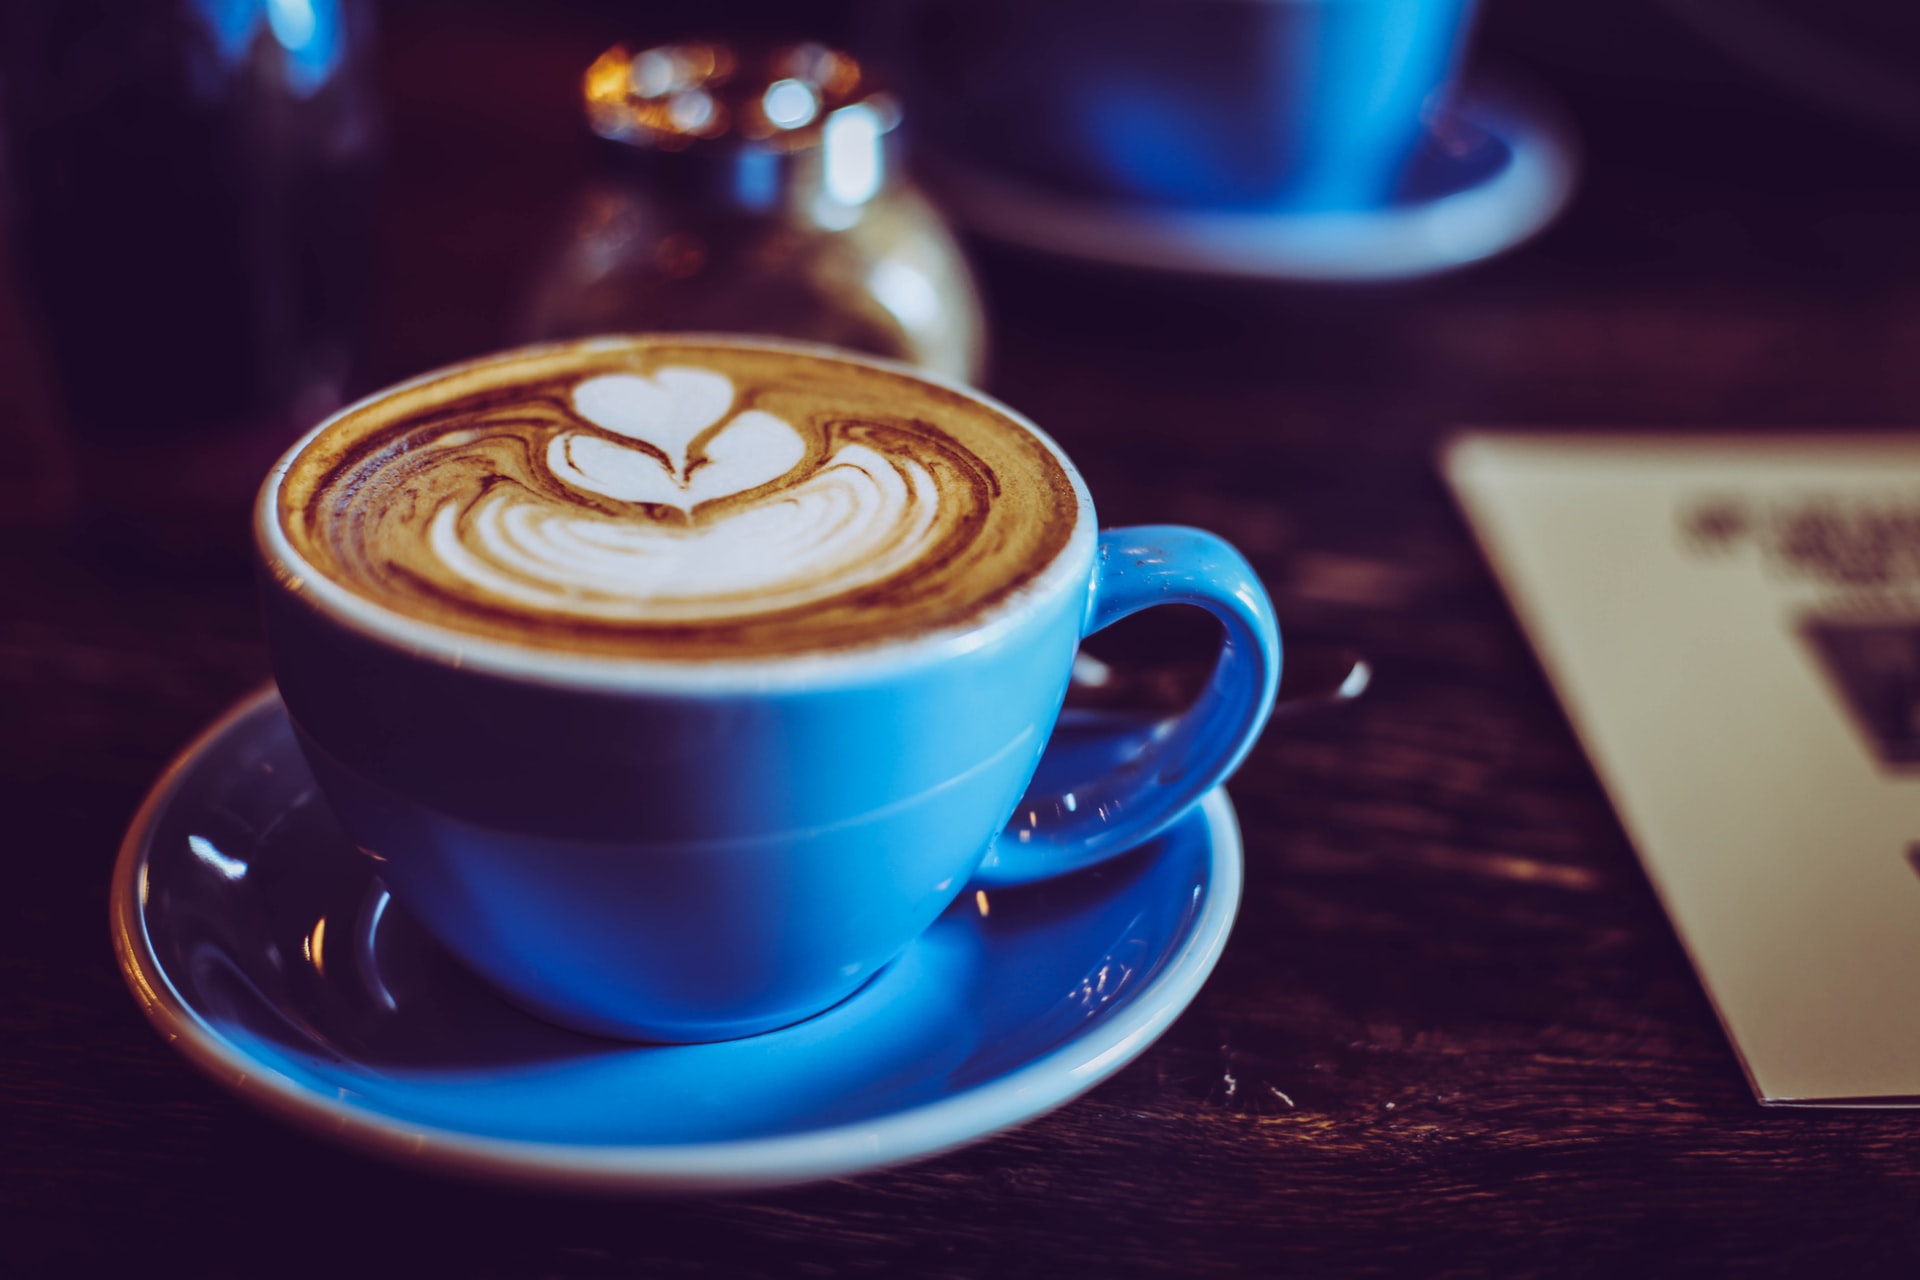 cappuccino_espresso_latte